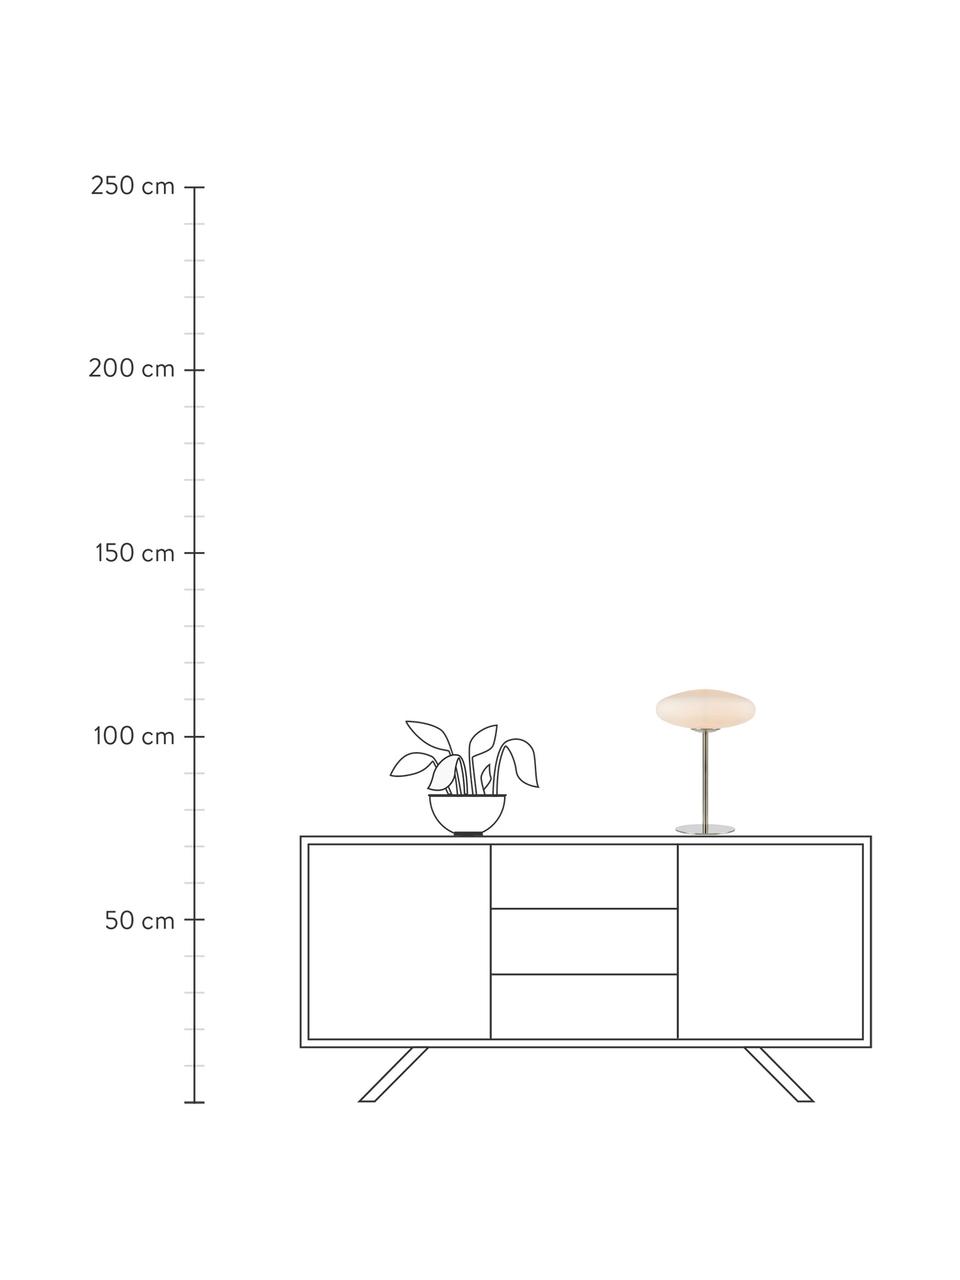 Lampa stołowa Locus, Kremowobiały, odcienie srebrnego, S 29 x W 40 cm